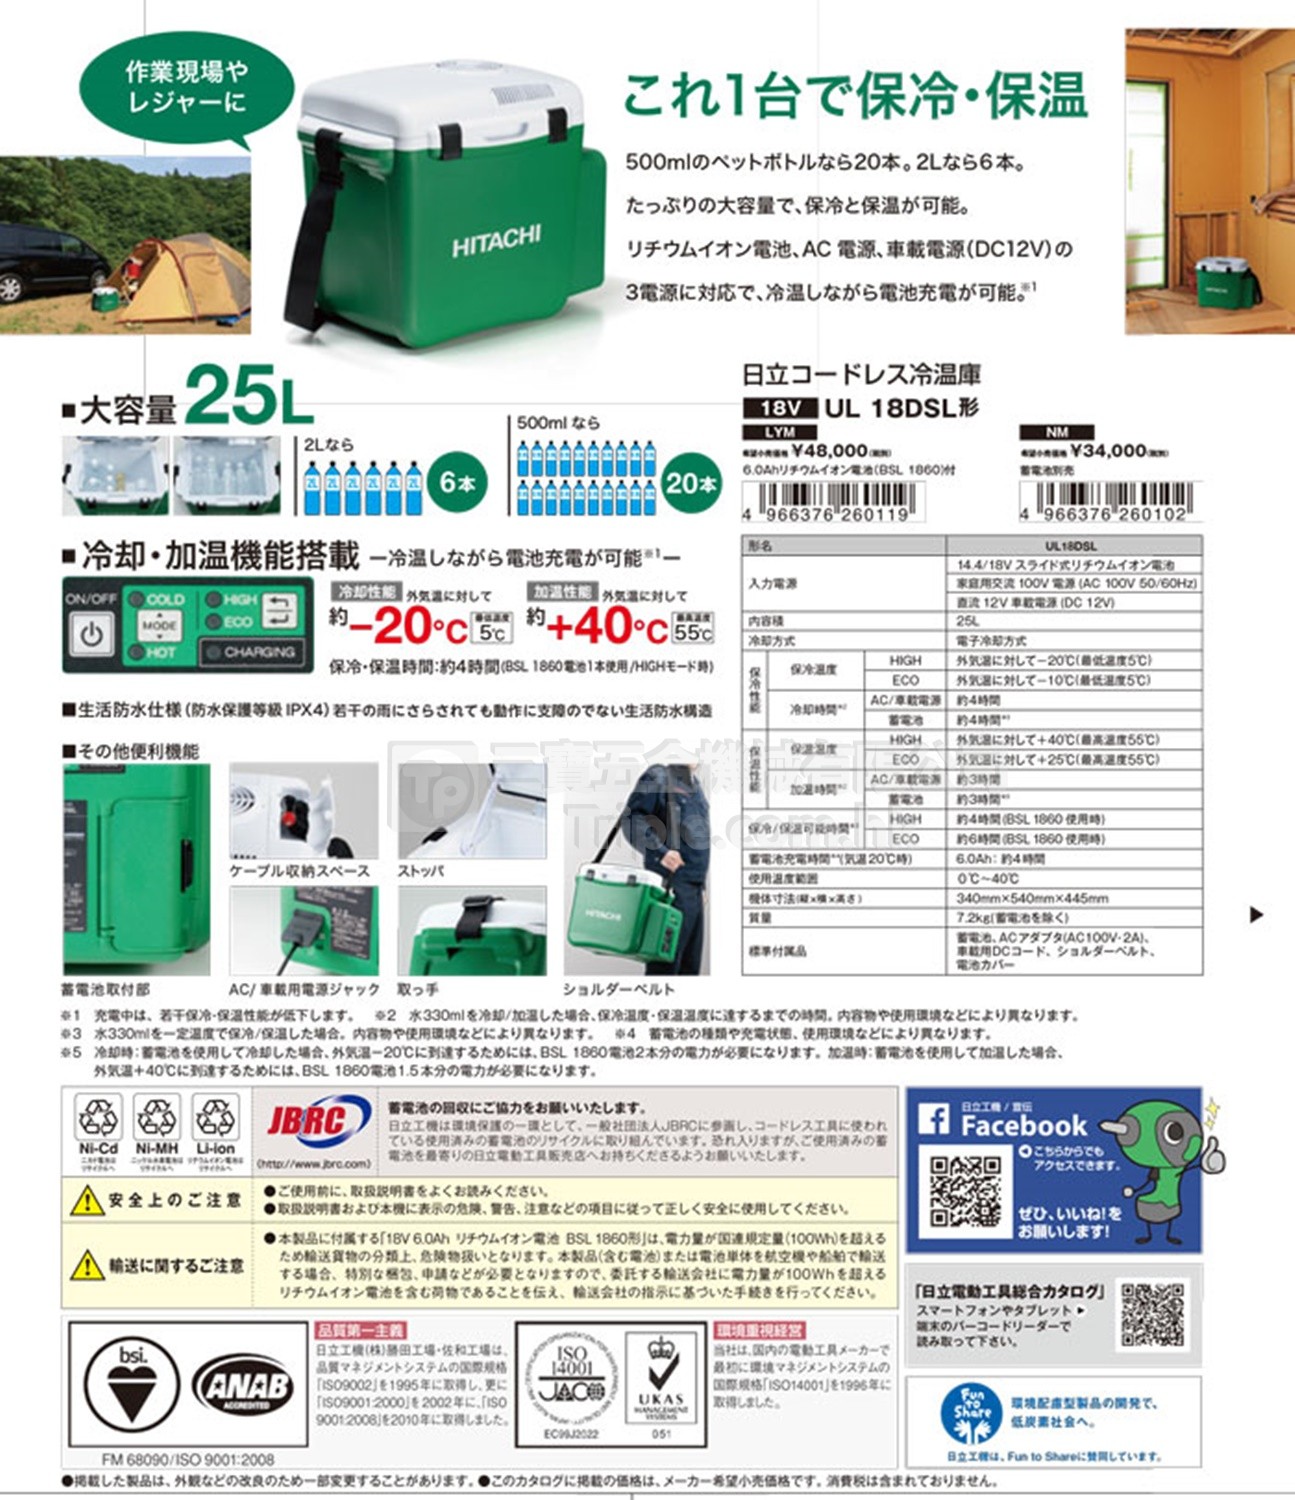 HITACHI日立便攜式雪櫃充電式冰箱UL18DSL 冷卻和加熱功能UL 18DSL